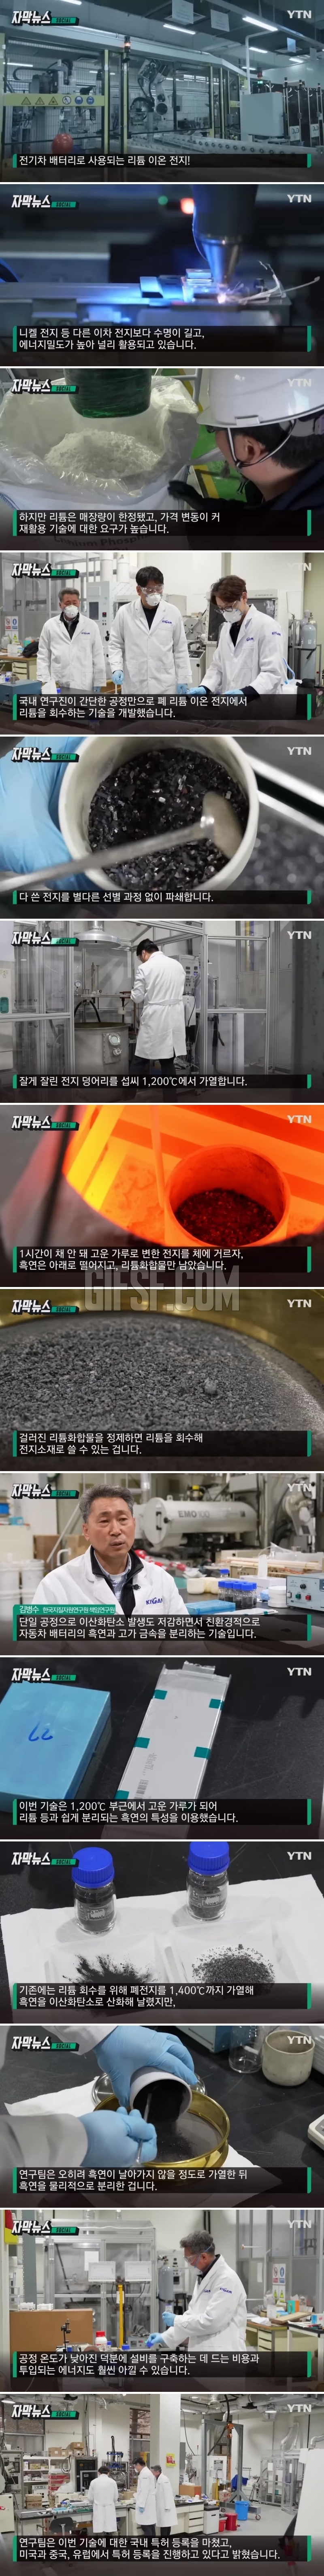 간단하게 리튬 회수…한국이 세계 최초로 개발한 기술 .jpg